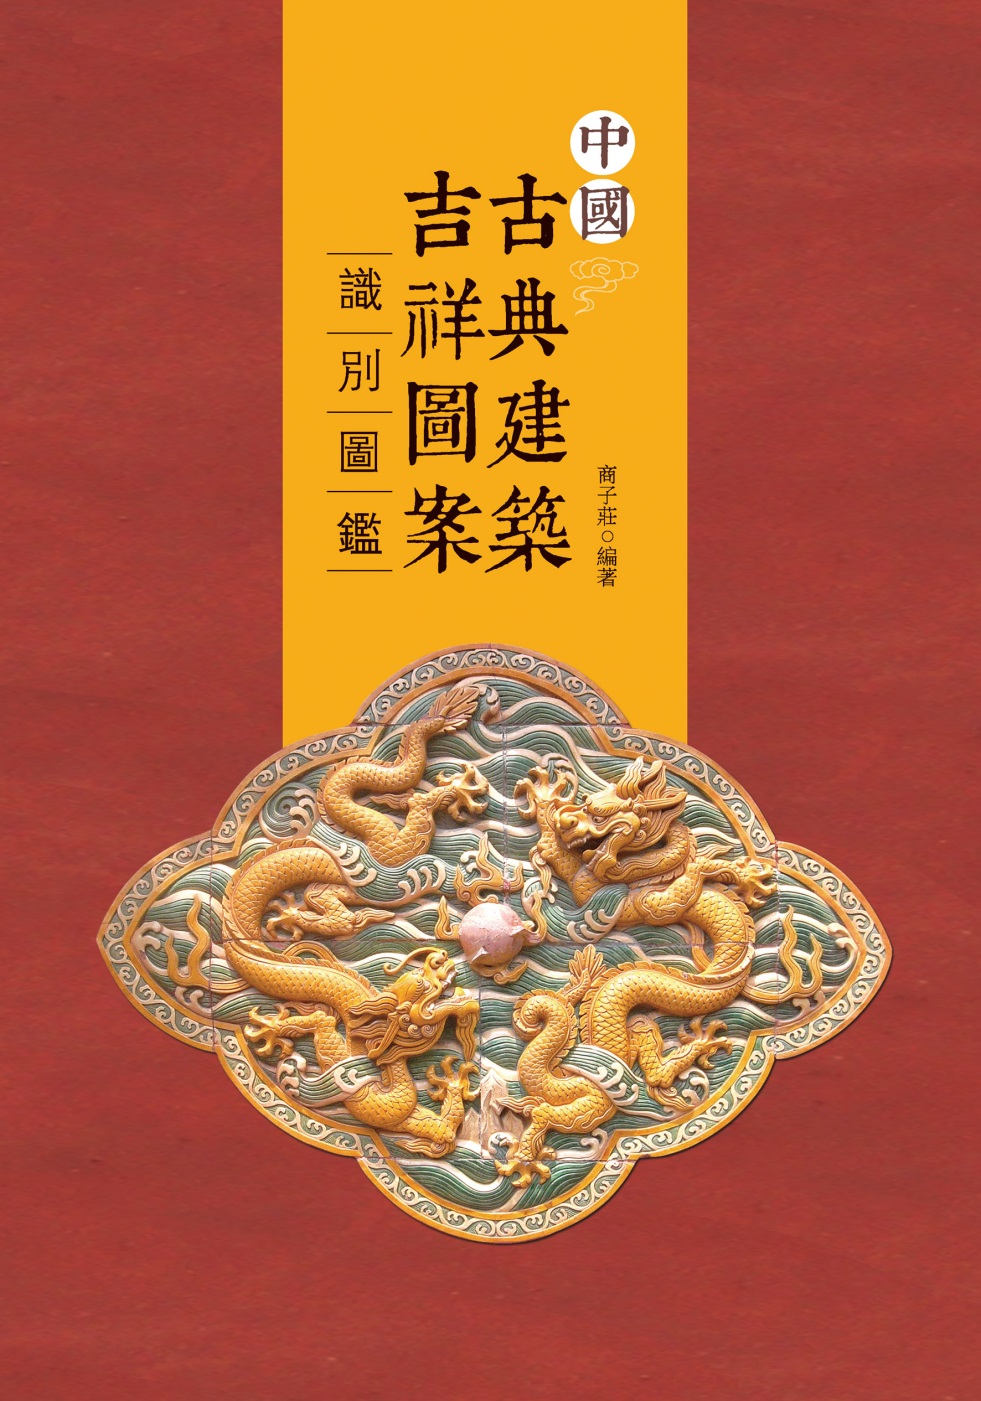 中國古典建築吉祥圖案識別圖鑒(另開視窗)